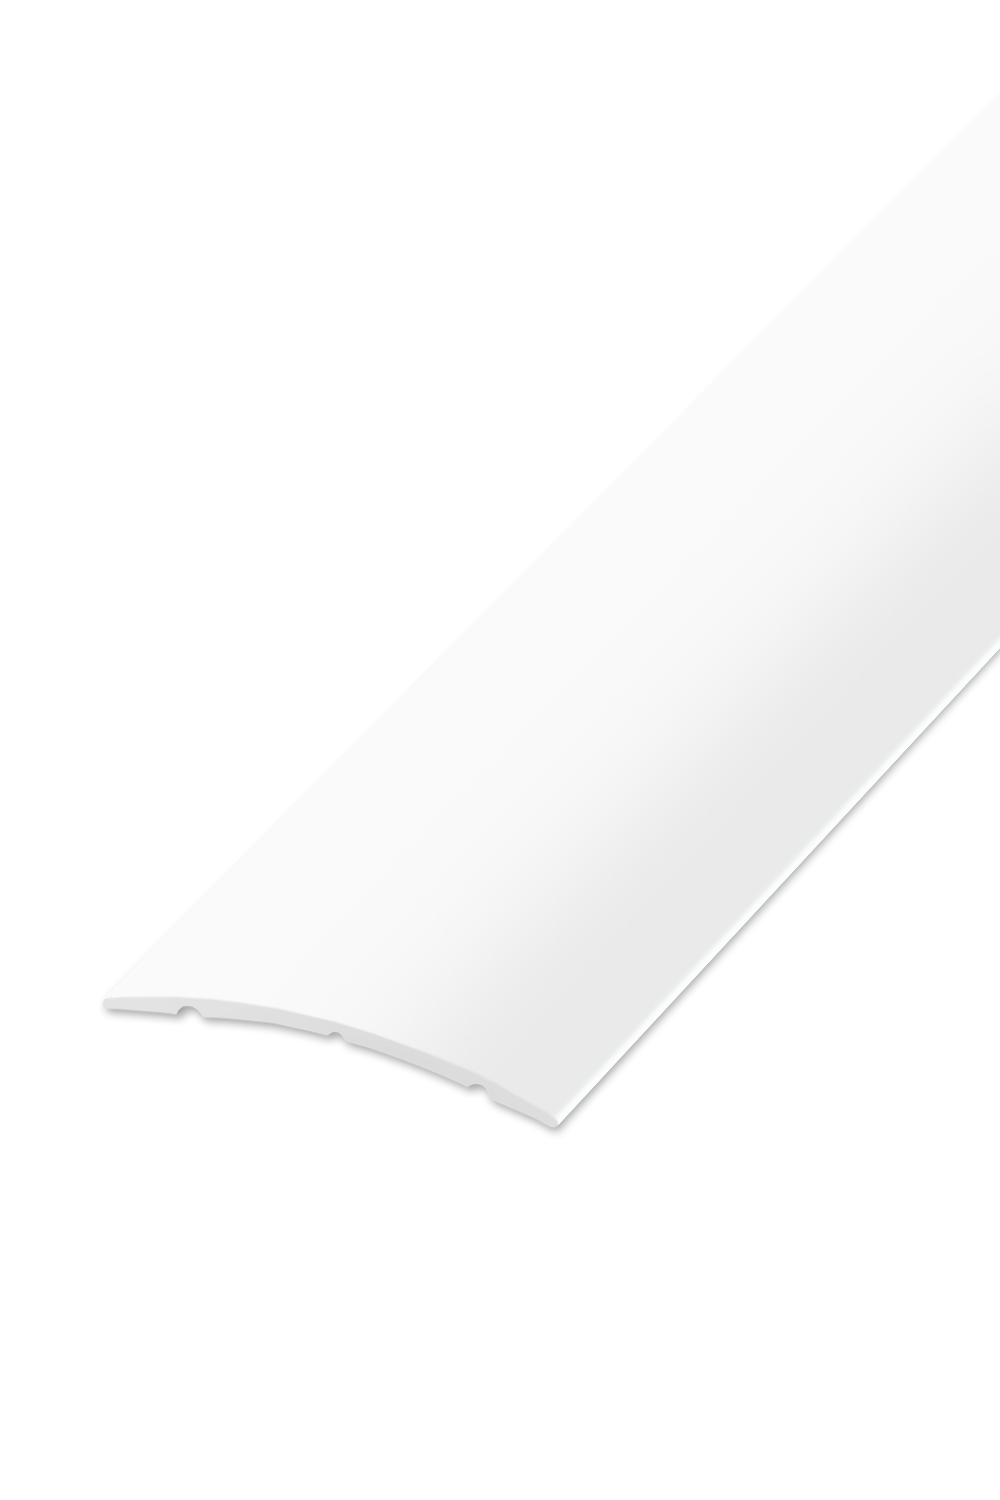 Přechodová lišta STANDARD 32 - Bílá Matná 270 cm